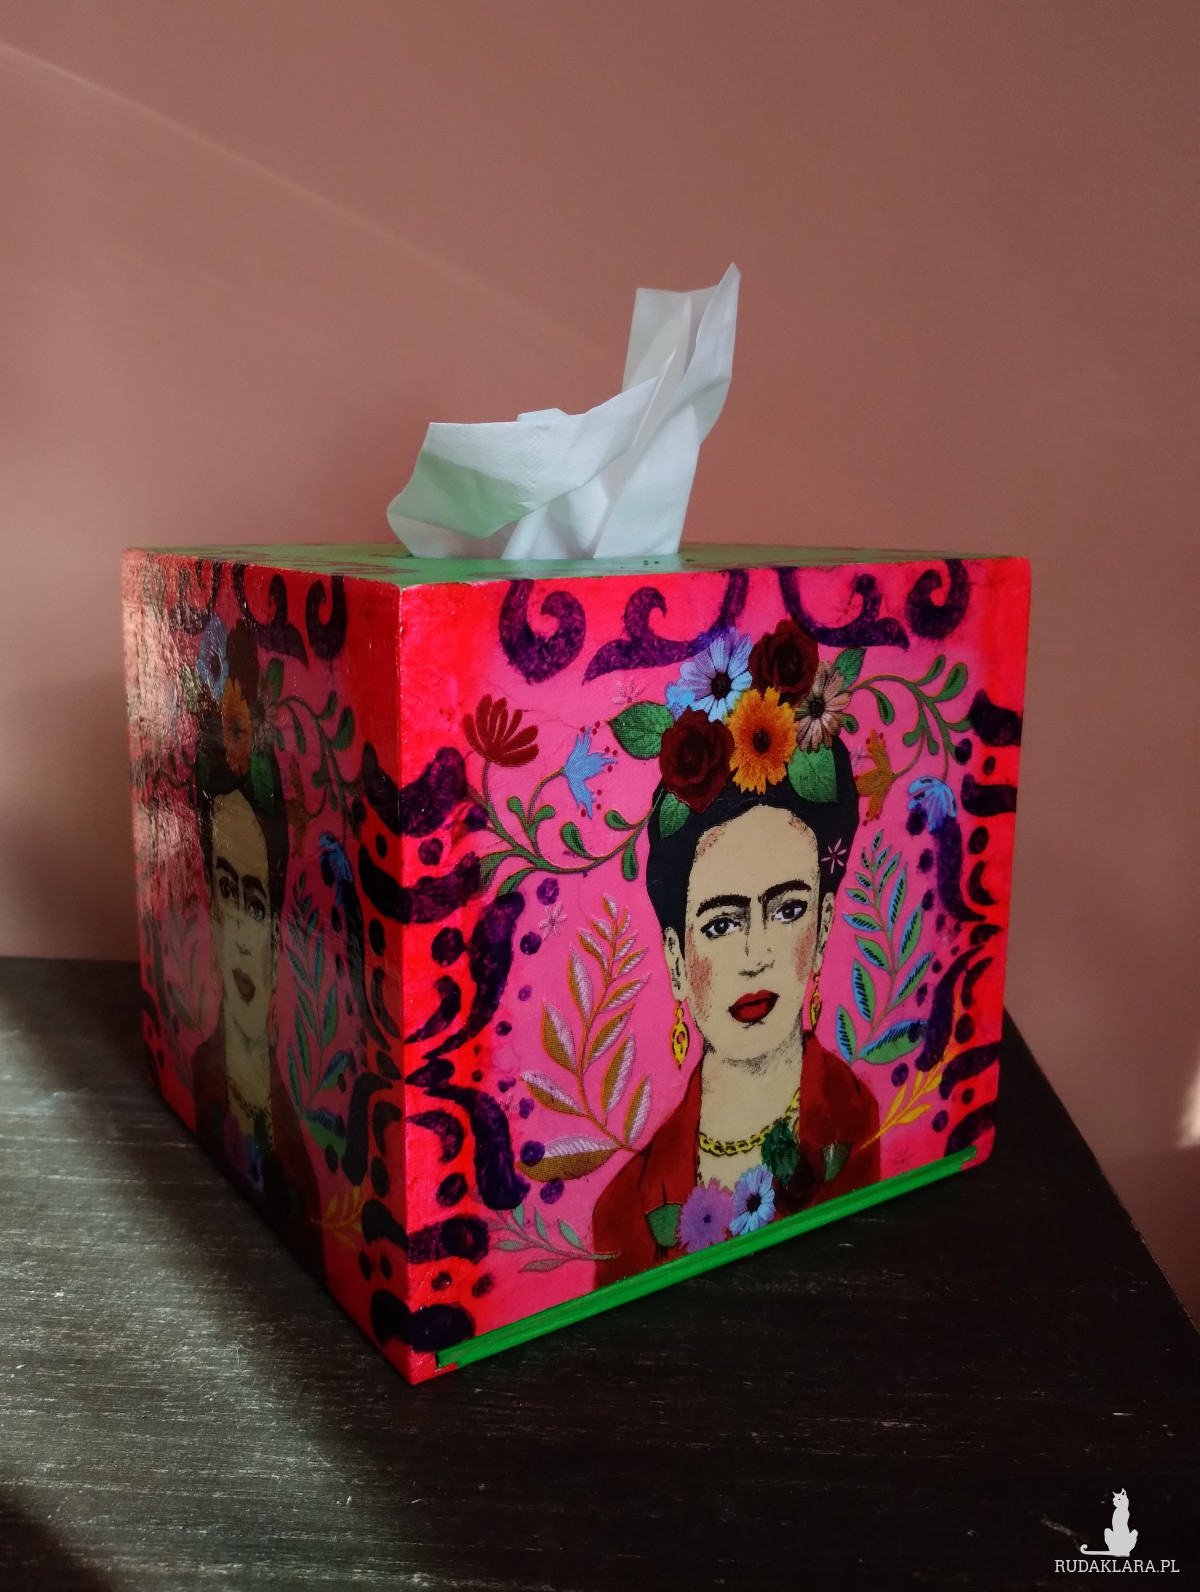 Drewniany kolorowy chustecznik Frida Kahlo klimat Meksyku żywe kolory decoupage